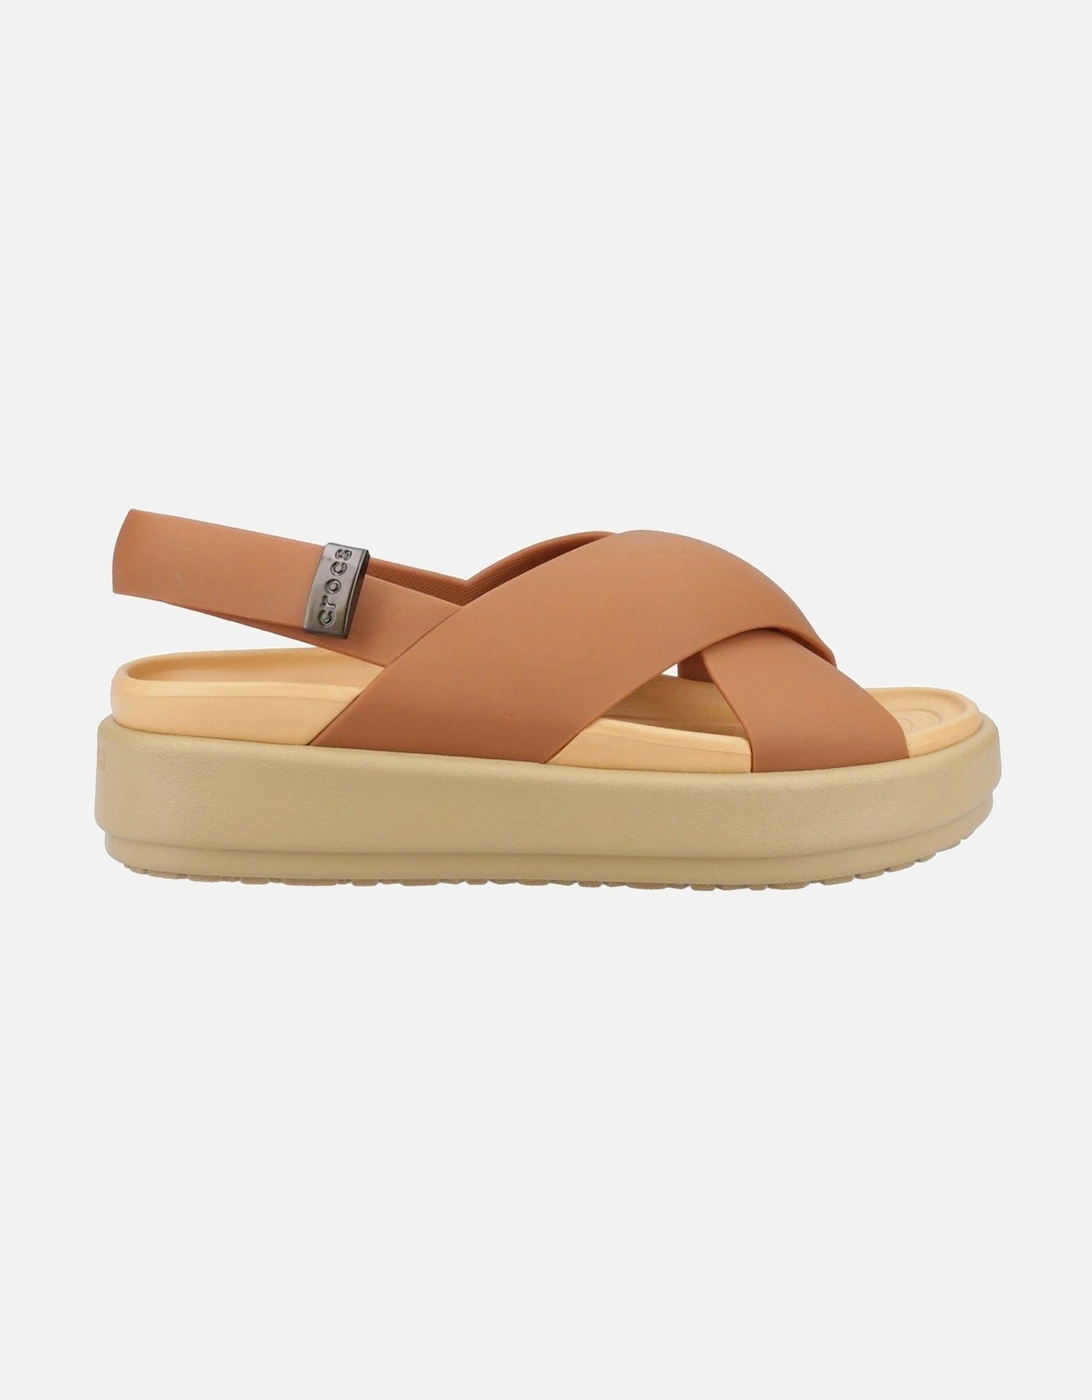 Brooklyn Luxe Sandal - Tan, 2 of 1